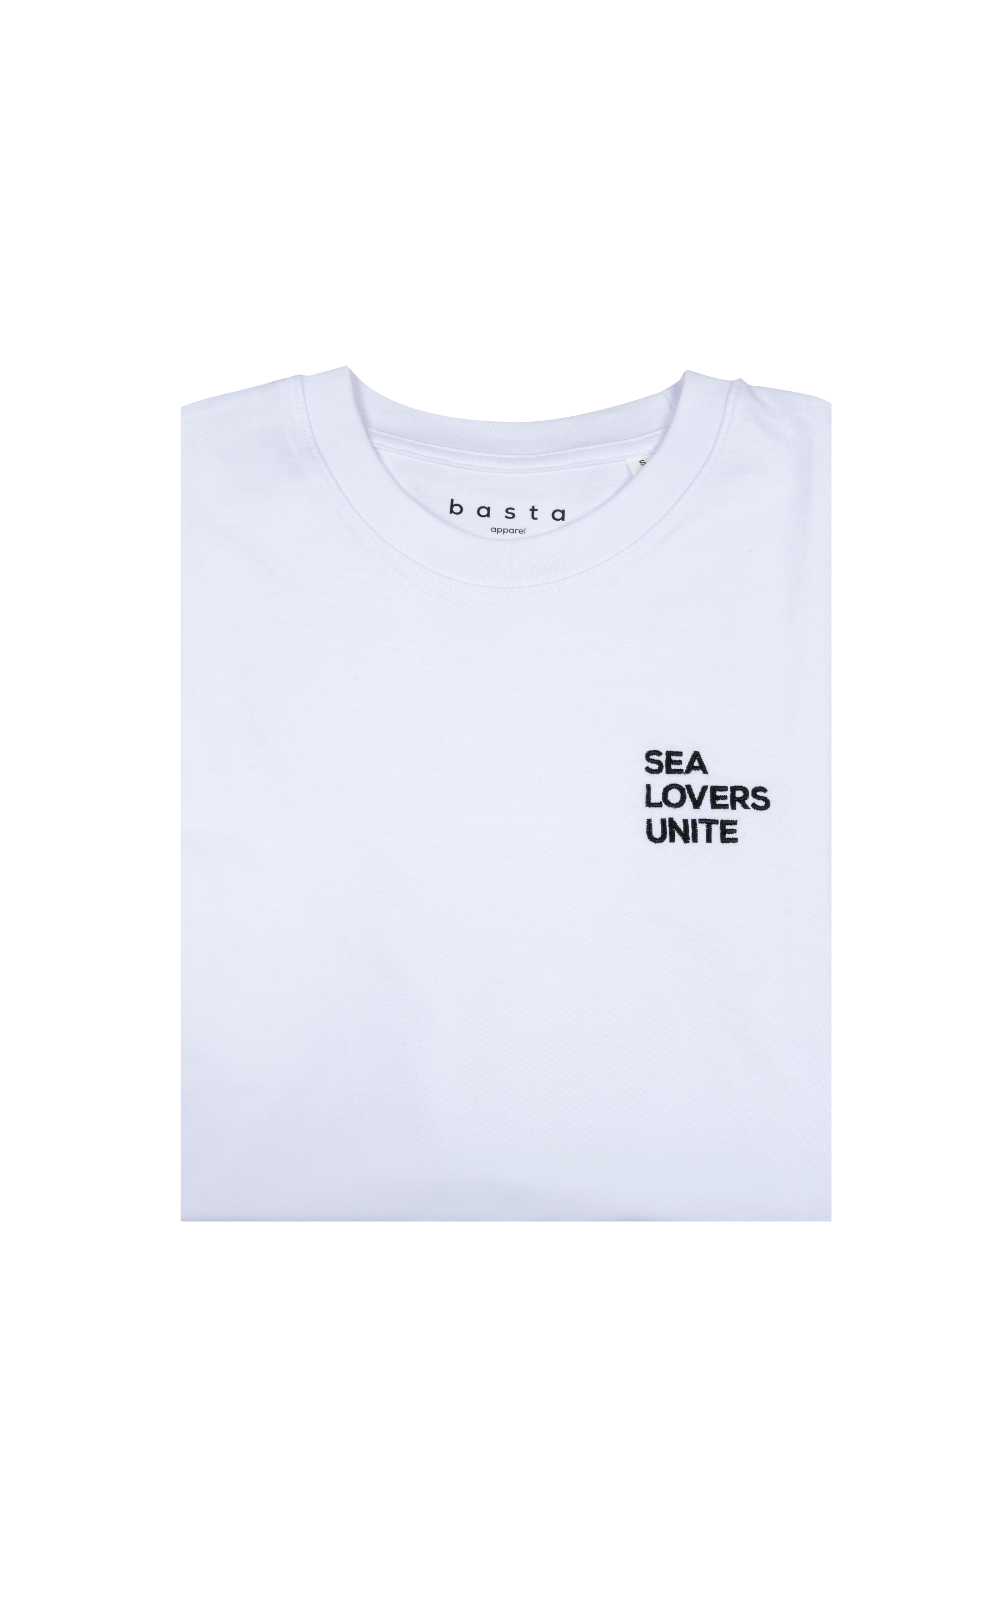 Sea lovers unite tee - White